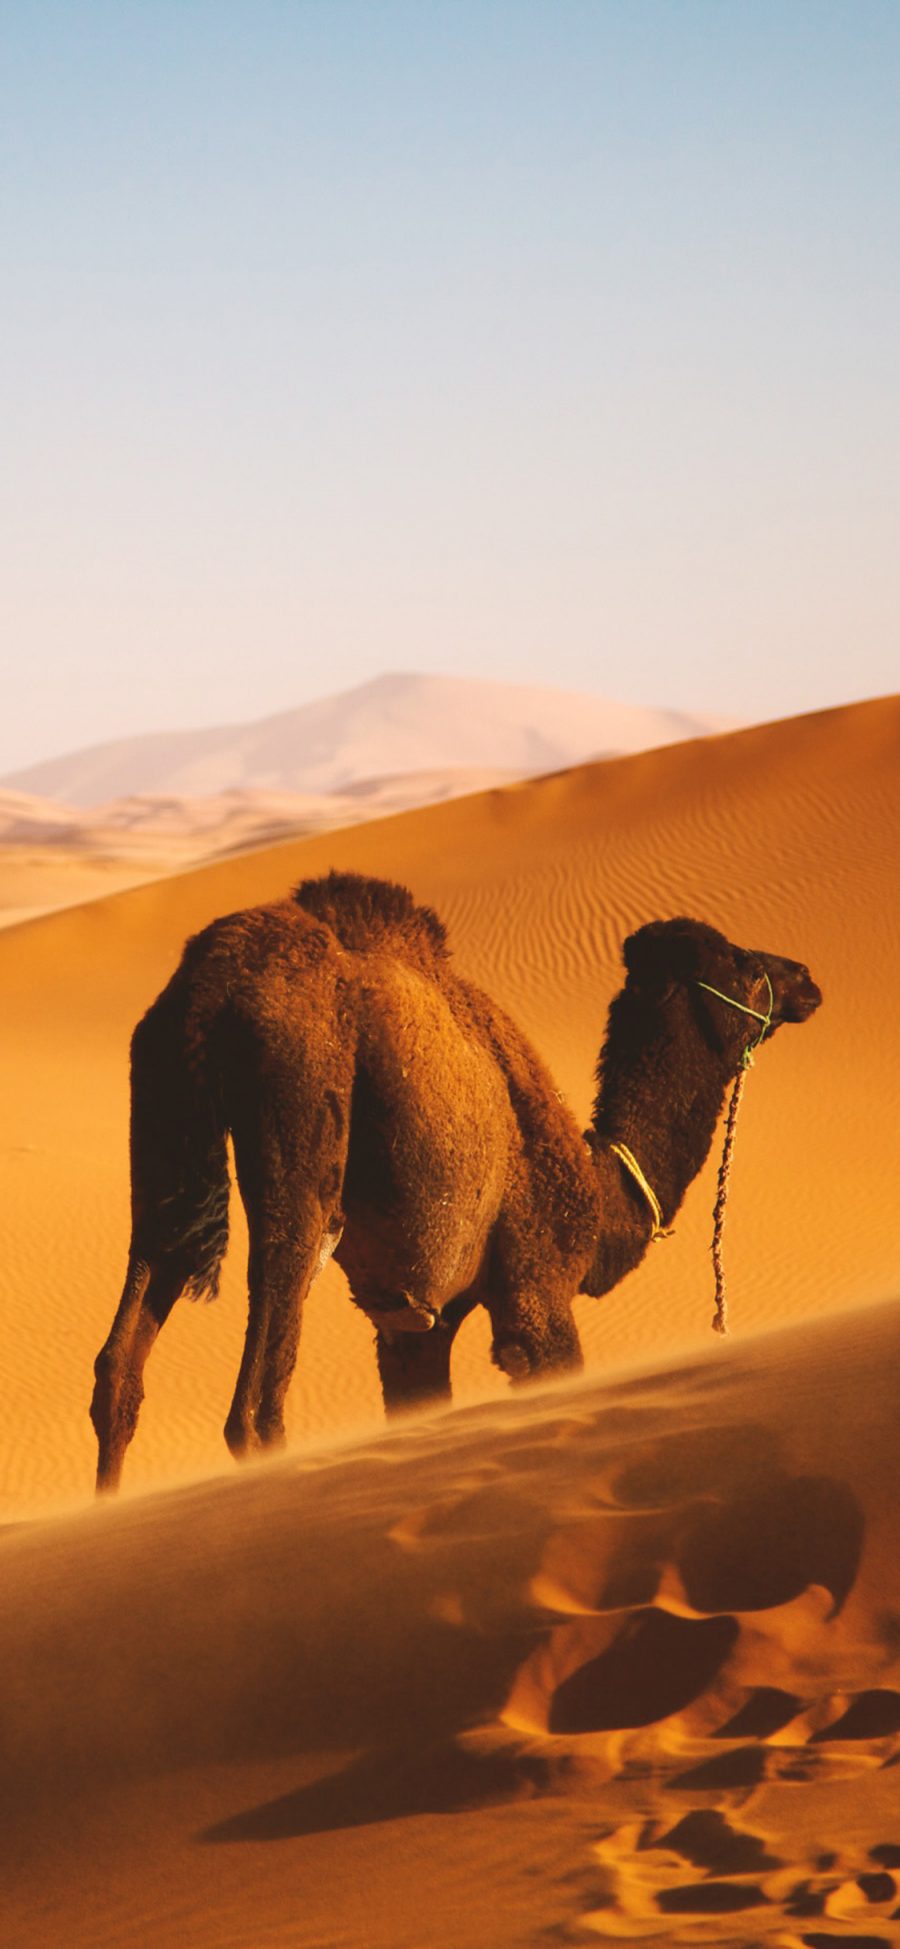 [2436×1125]沙漠 骆驼 沙漠之舟 行走 苹果手机壁纸图片